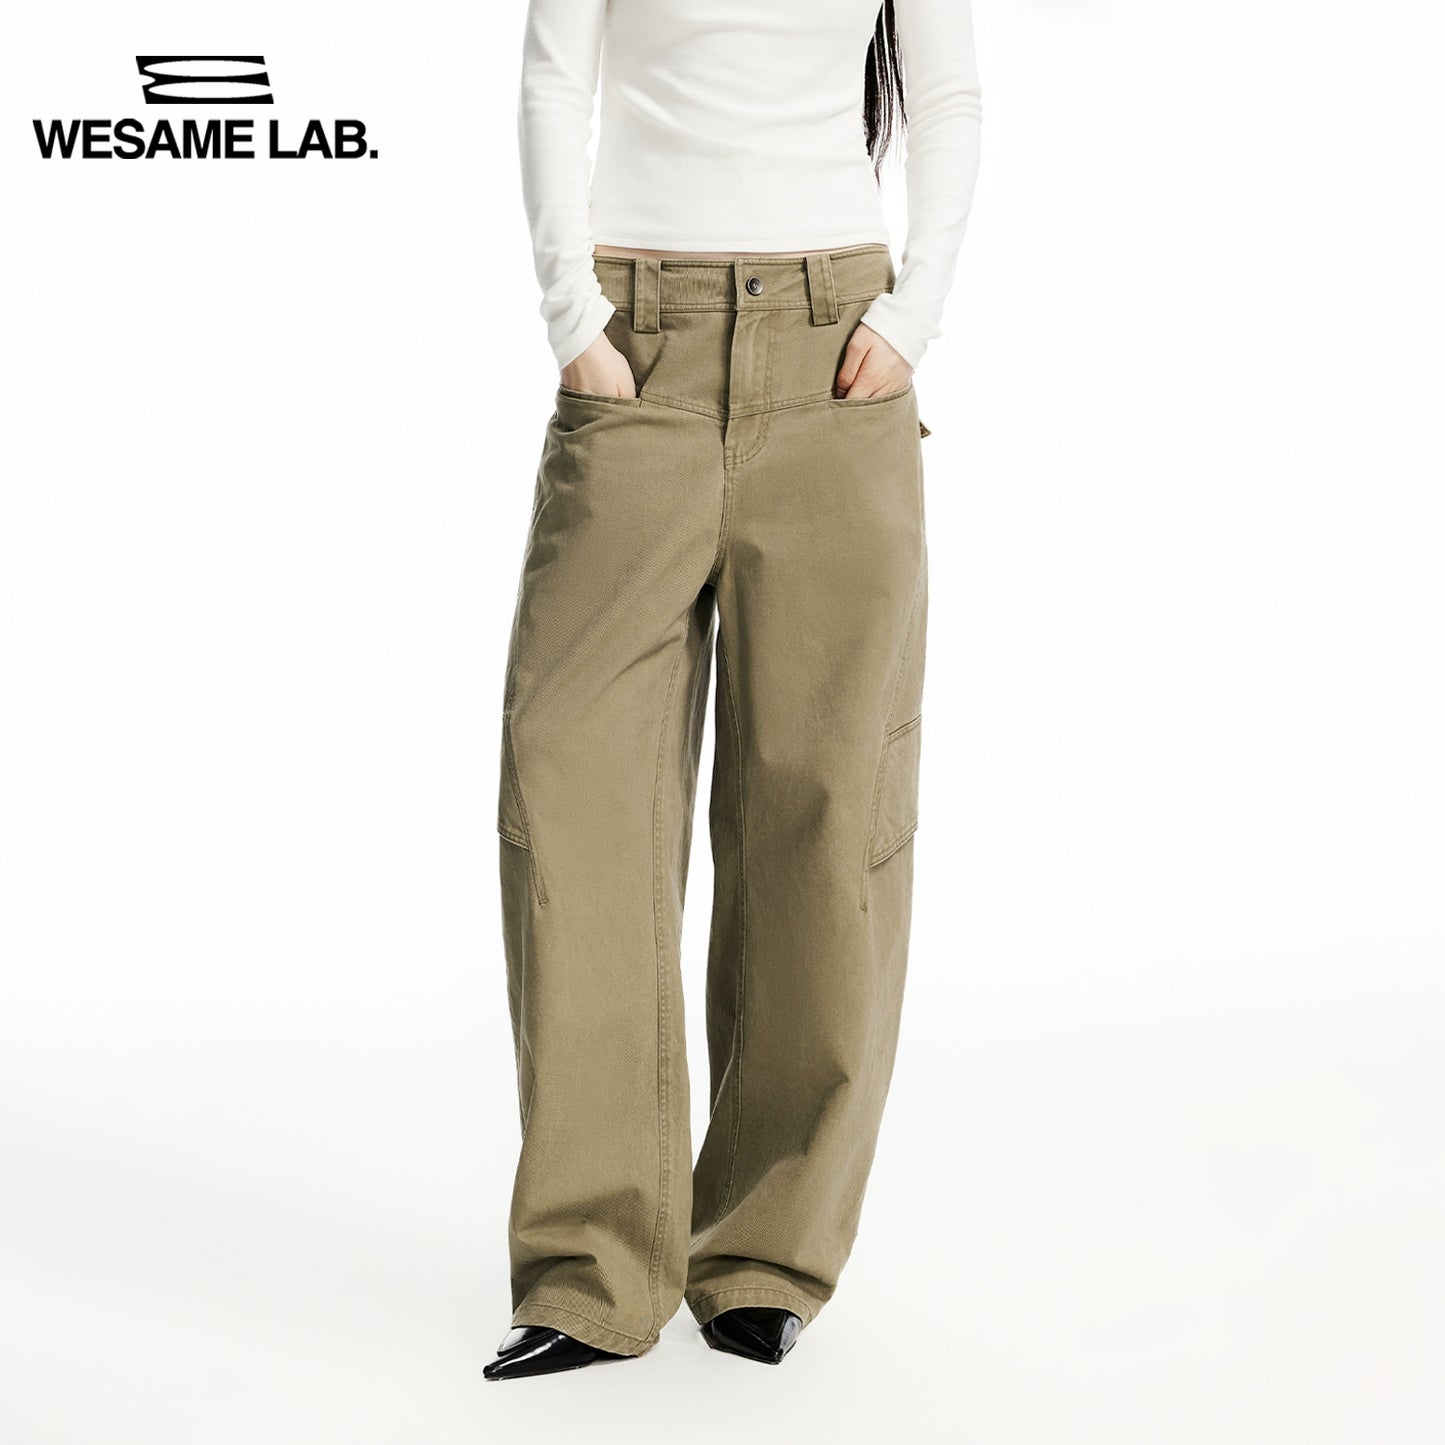 Copertina di abbigliamento da lavoro diviso i pantaloni sciolti khaki